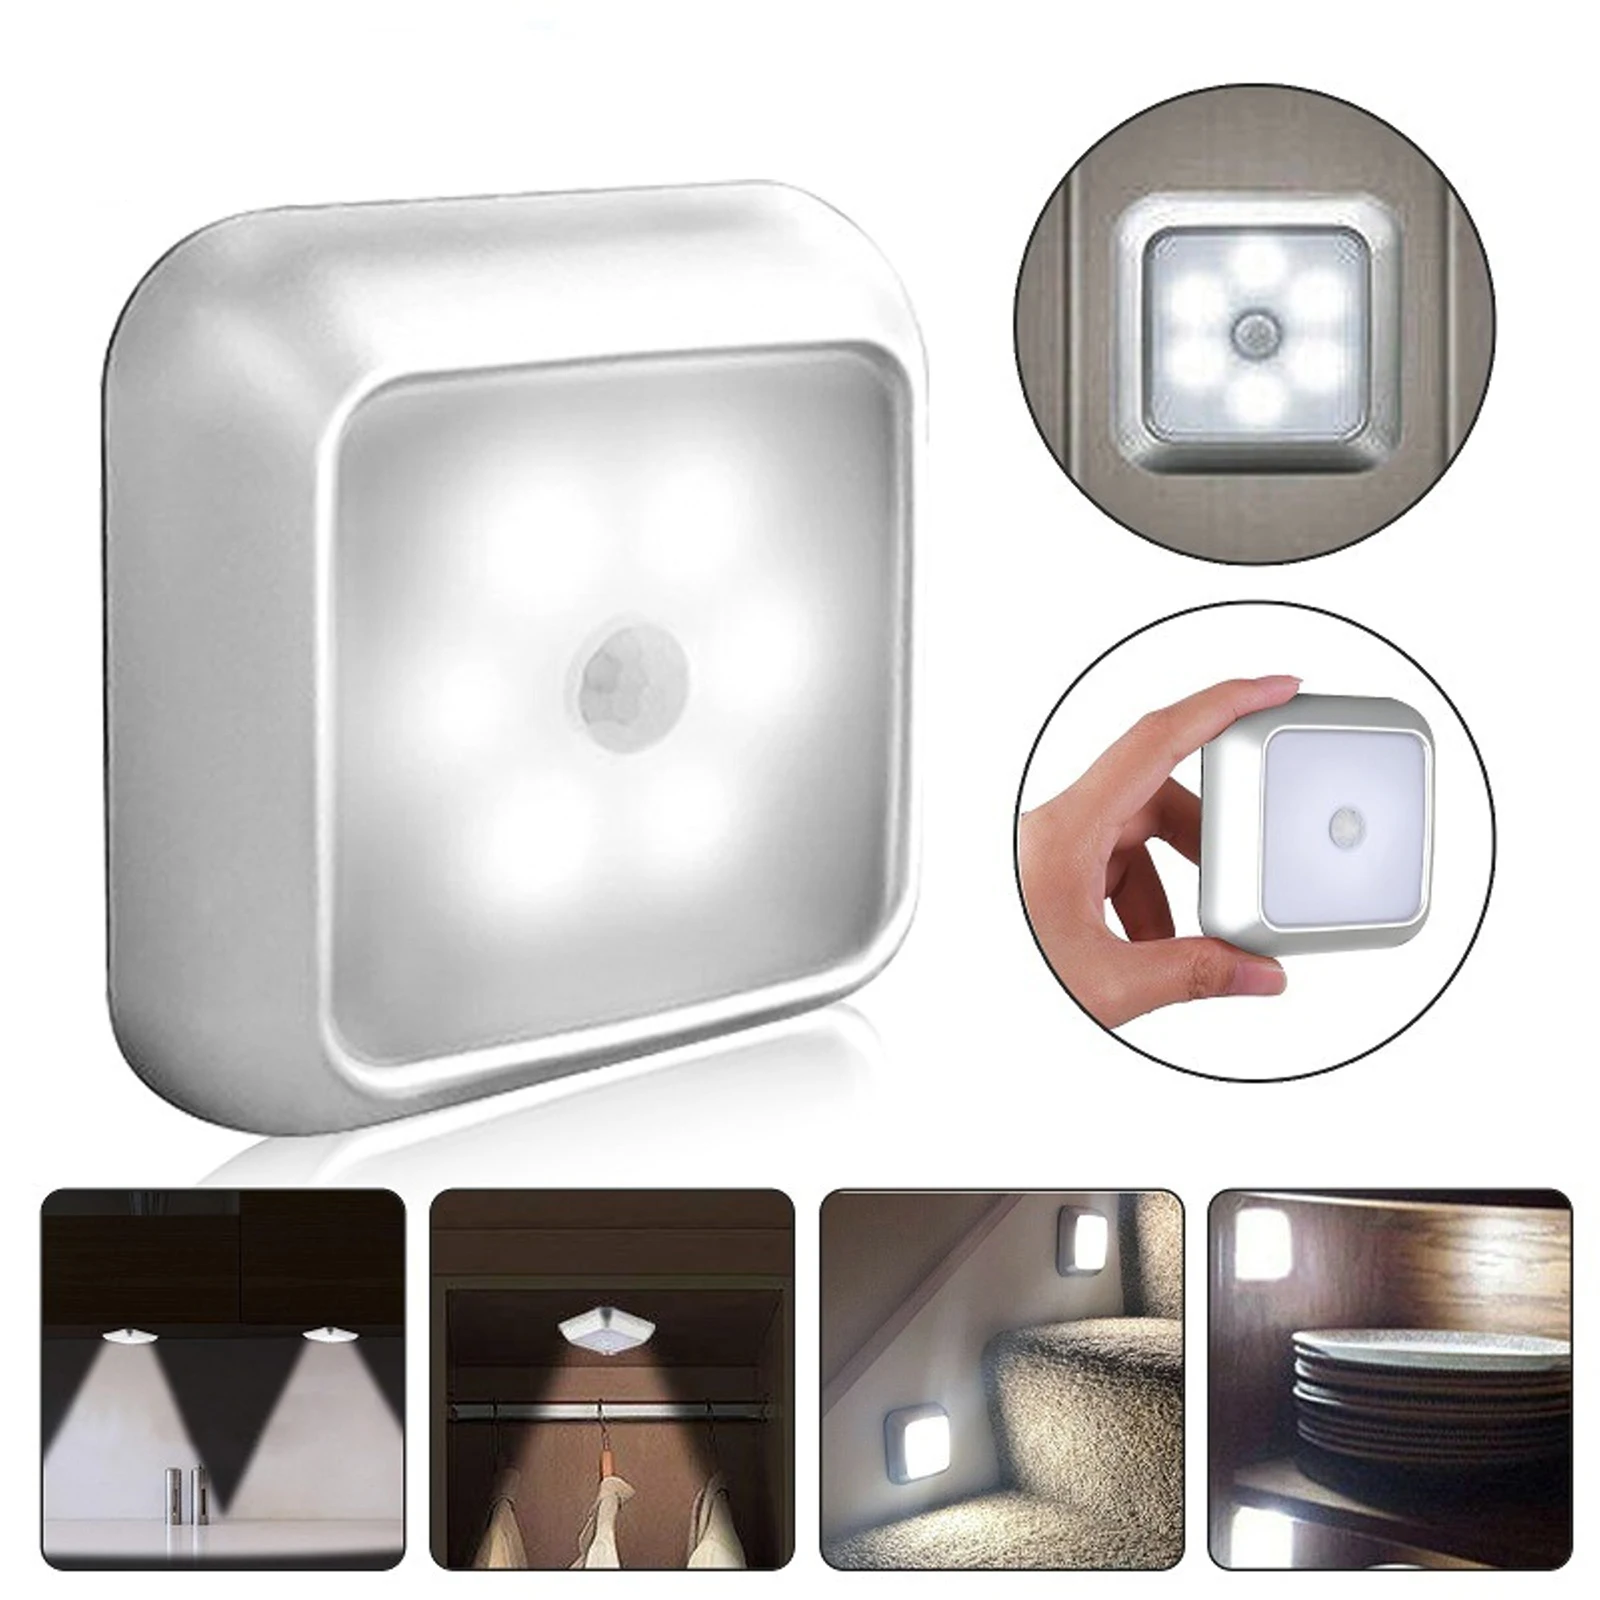 

Магнитный сенсорный светильник для шкафа, лампа с питанием от батарейки, индукционный ночник для человеческого тела, для комнаты, спальни